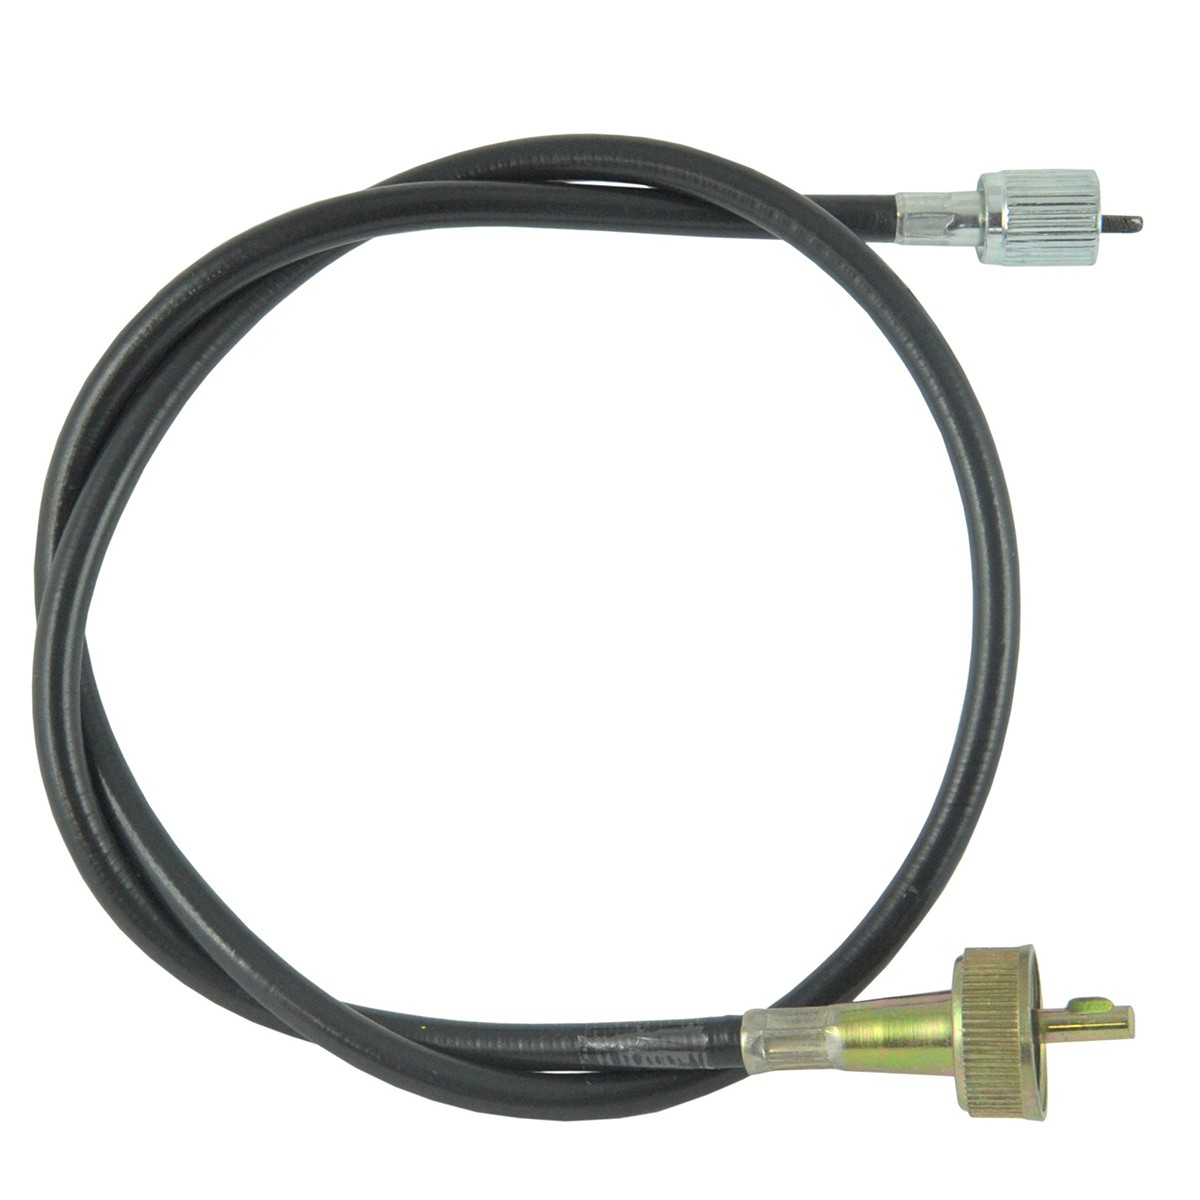 Câble de compteur / 825 mm / Iseki TA230/TE4350/TE4270/TS2205/TU2300 / 1444-621-003-00 / 9-25-107-04